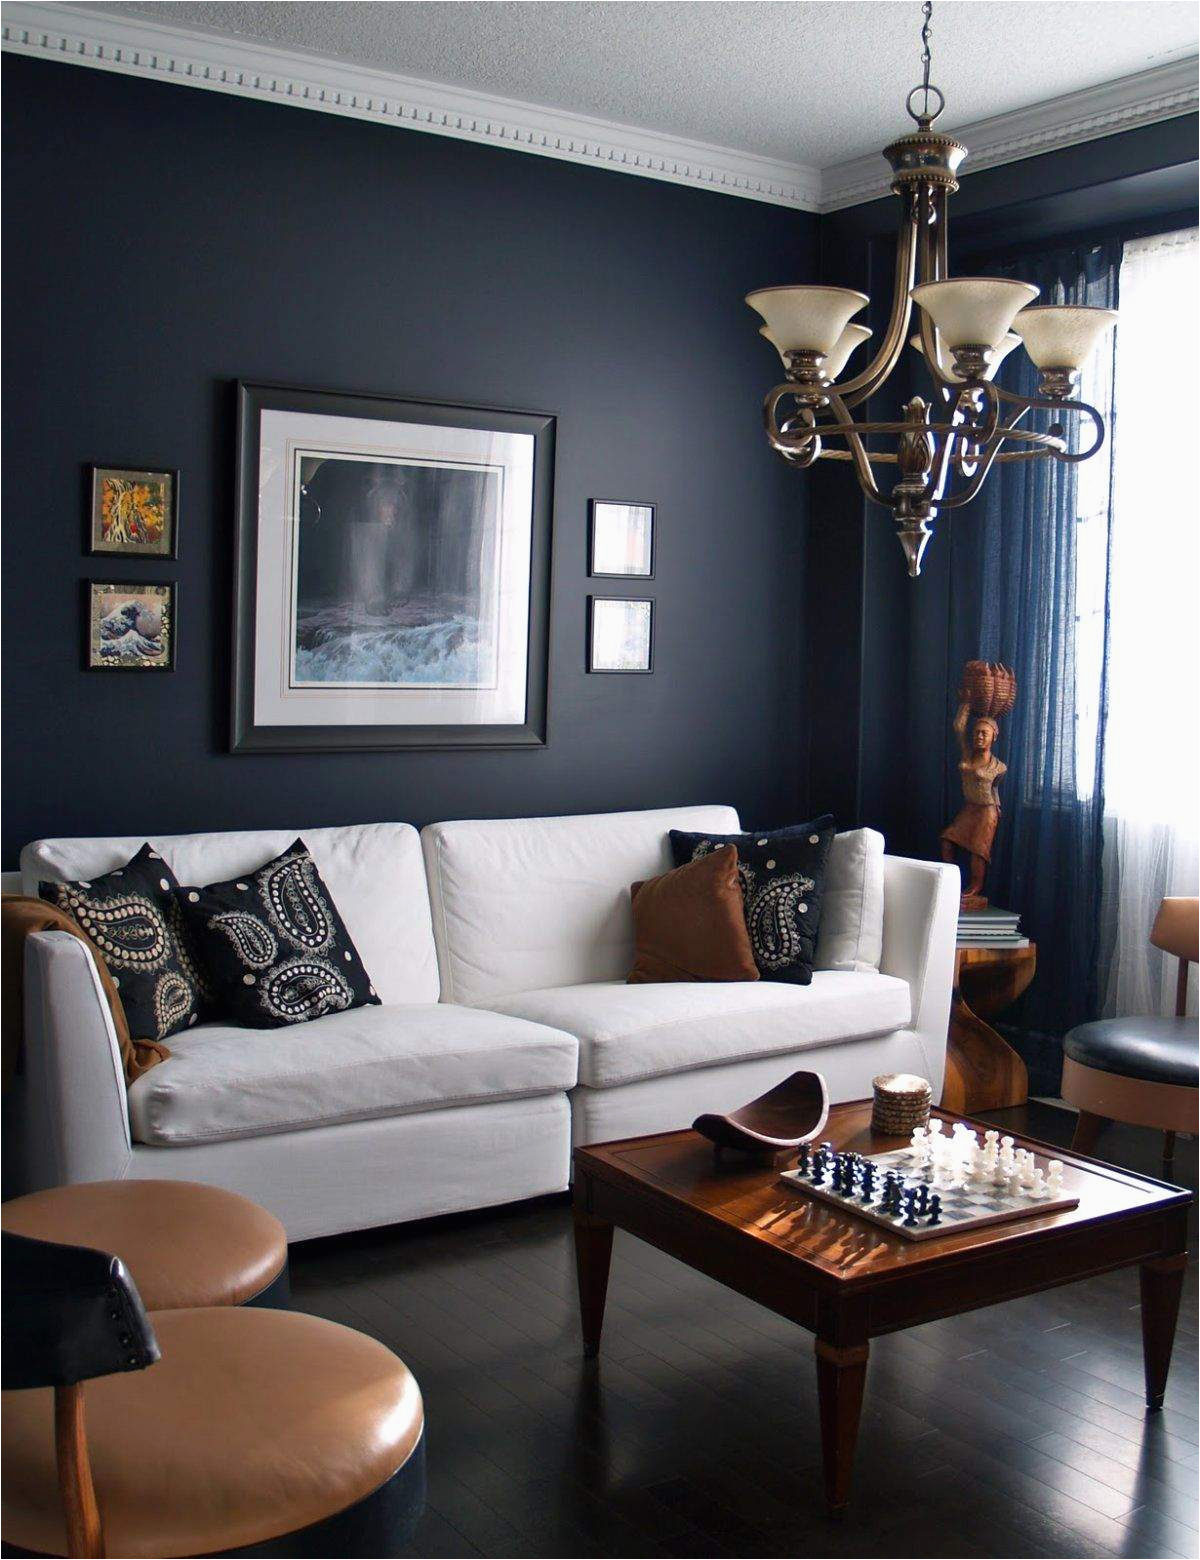 wohnzimmer blau grau inspirierend wandfarben trends wohnzimmer schon dunkelblaue wand of wohnzimmer blau grau 1